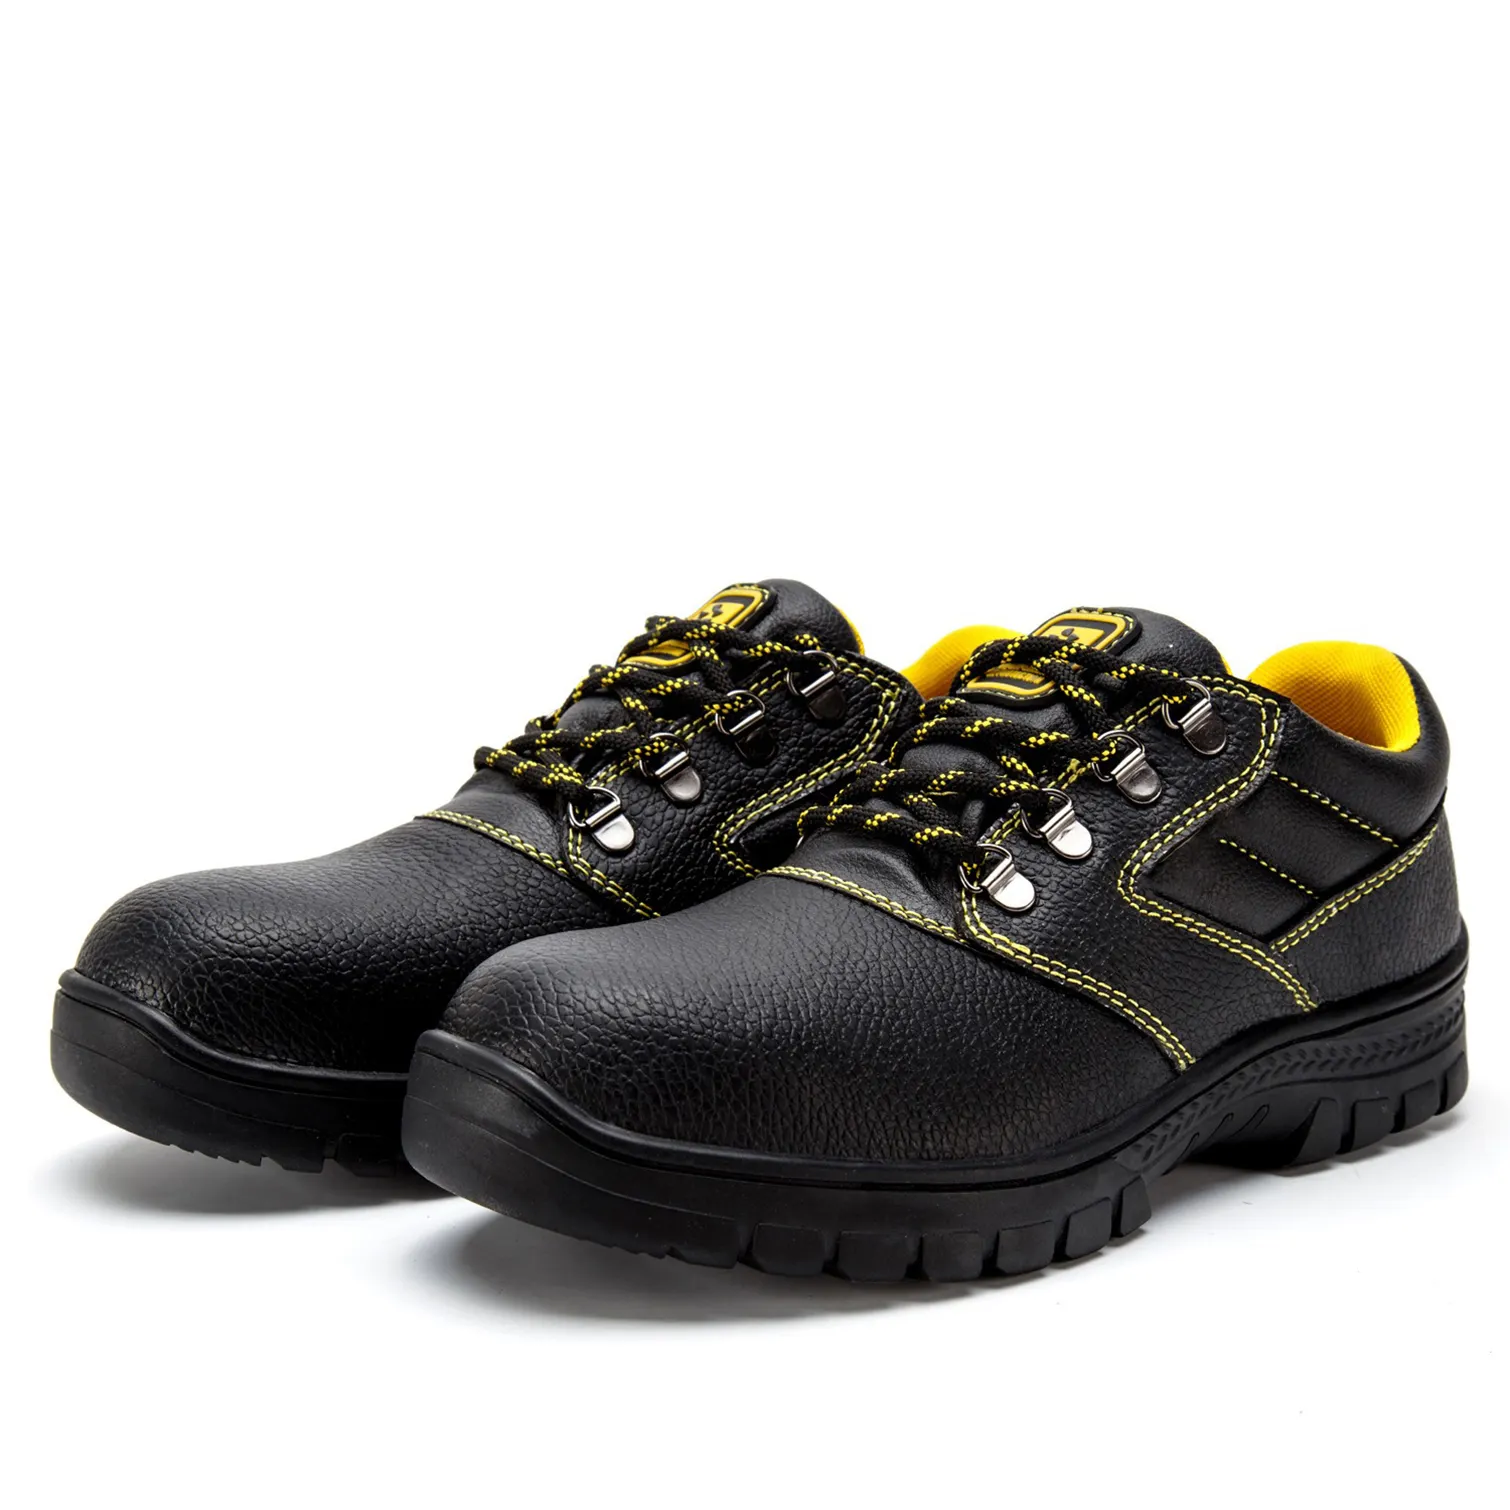 Chaussures de sécurité en caoutchouc industriel pour hommes et femmes, bottes de marque de travail, de Construction, souliers étanches, vente en gros